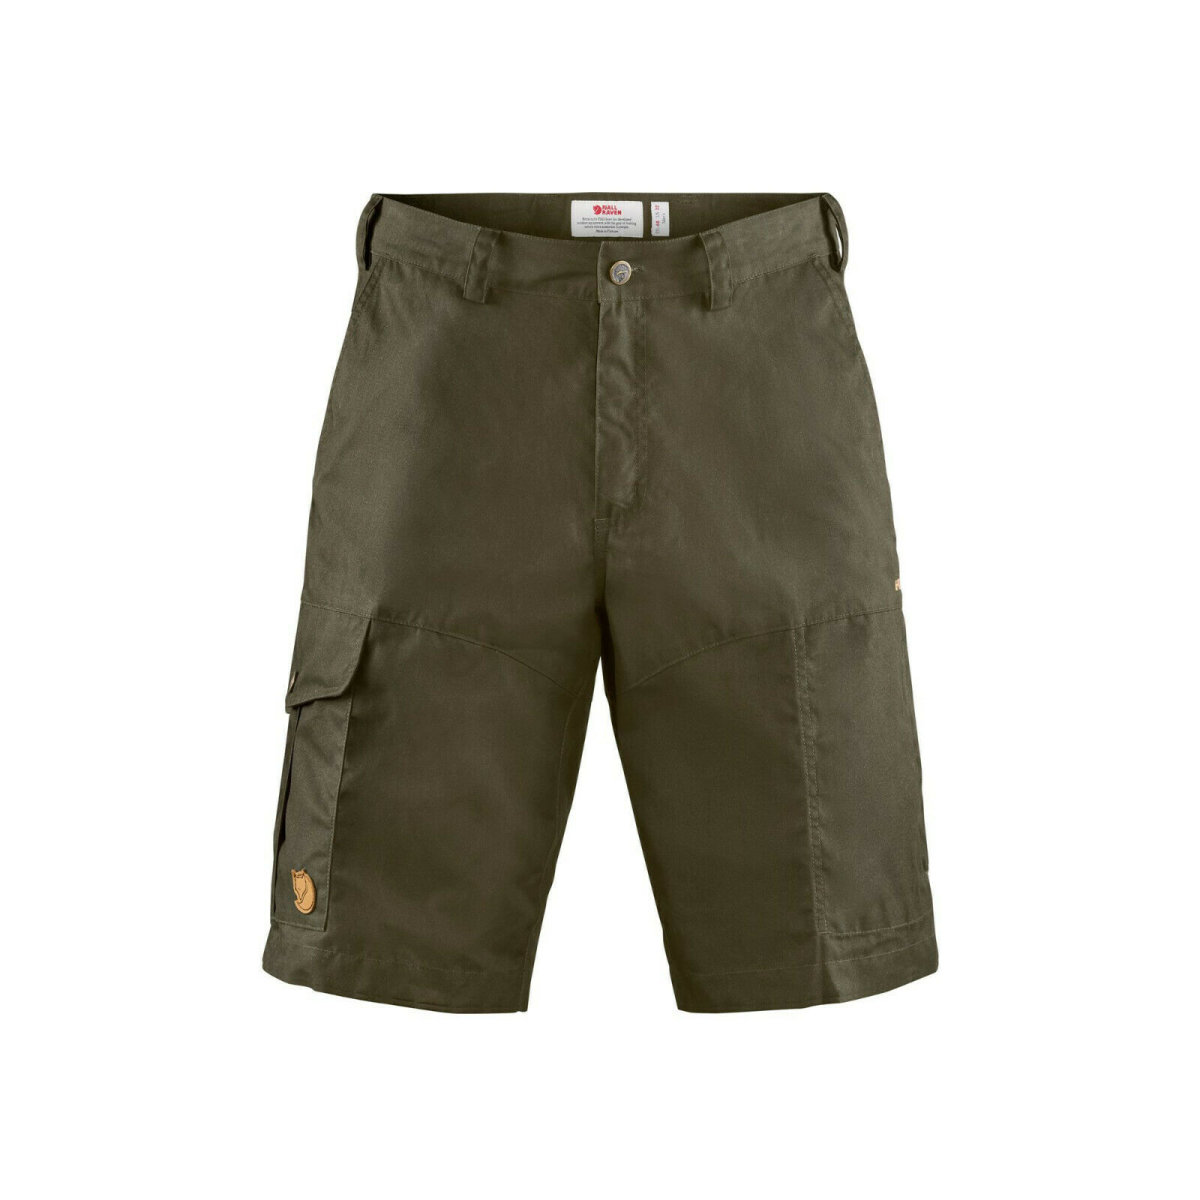 Fj&auml;llr&auml;ven Karl Pro Shorts 87224 dark oliv G-1000&reg; Shorts Outdoor Trekking Hose